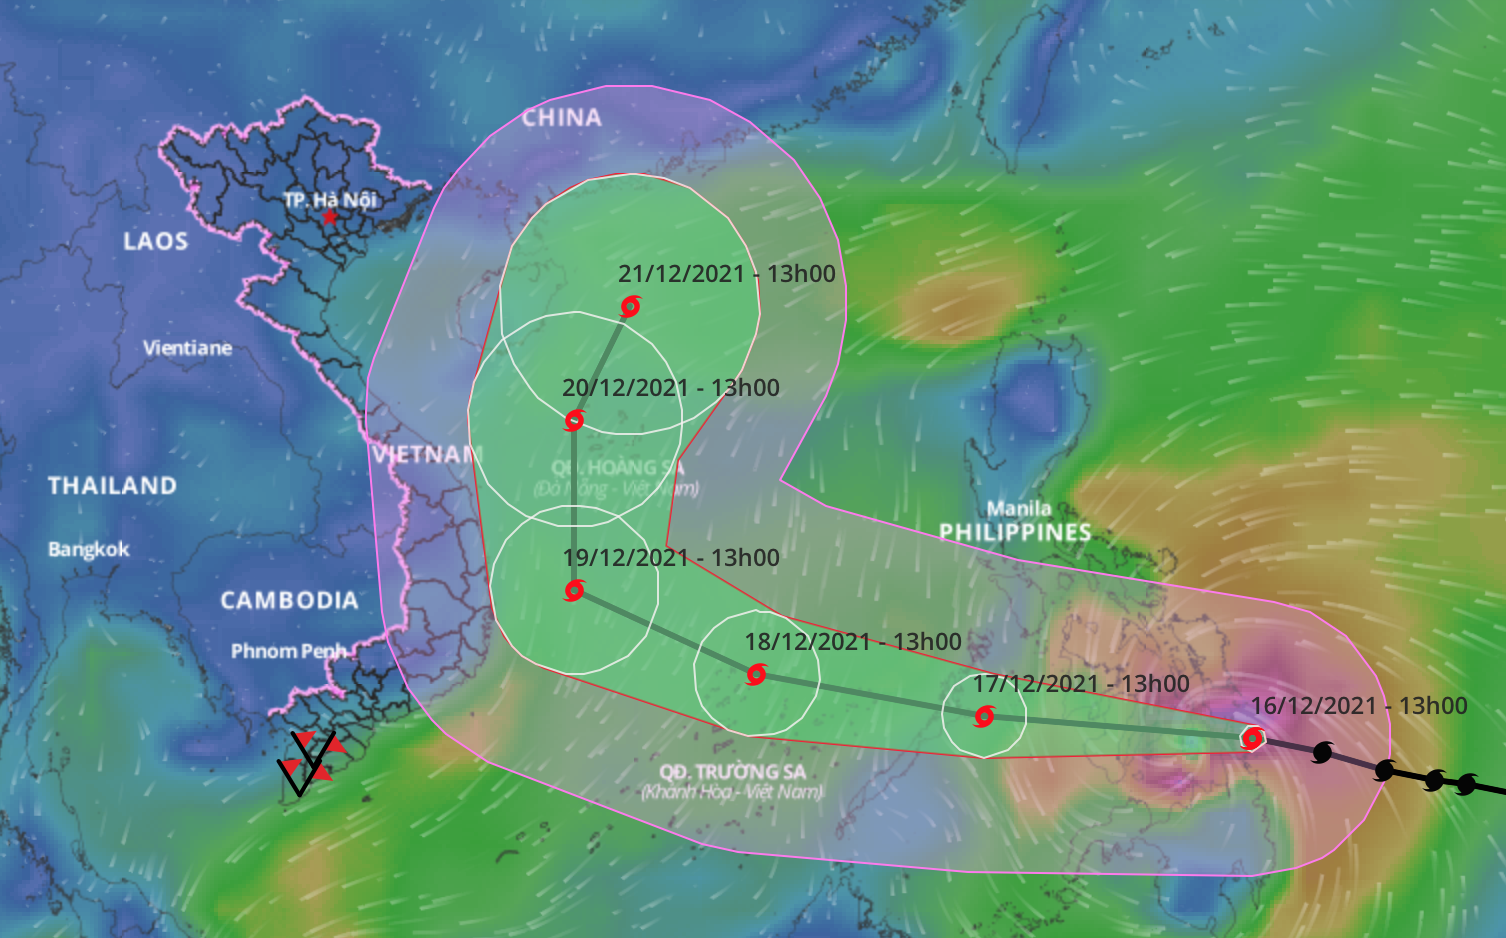 MỚI NHẤT: Siêu bão RAI đã ở ngay cạnh biển Đông, Ban chỉ đạo phòng chống thiên tai lên 2 kịch bản gấp - Ảnh 3.